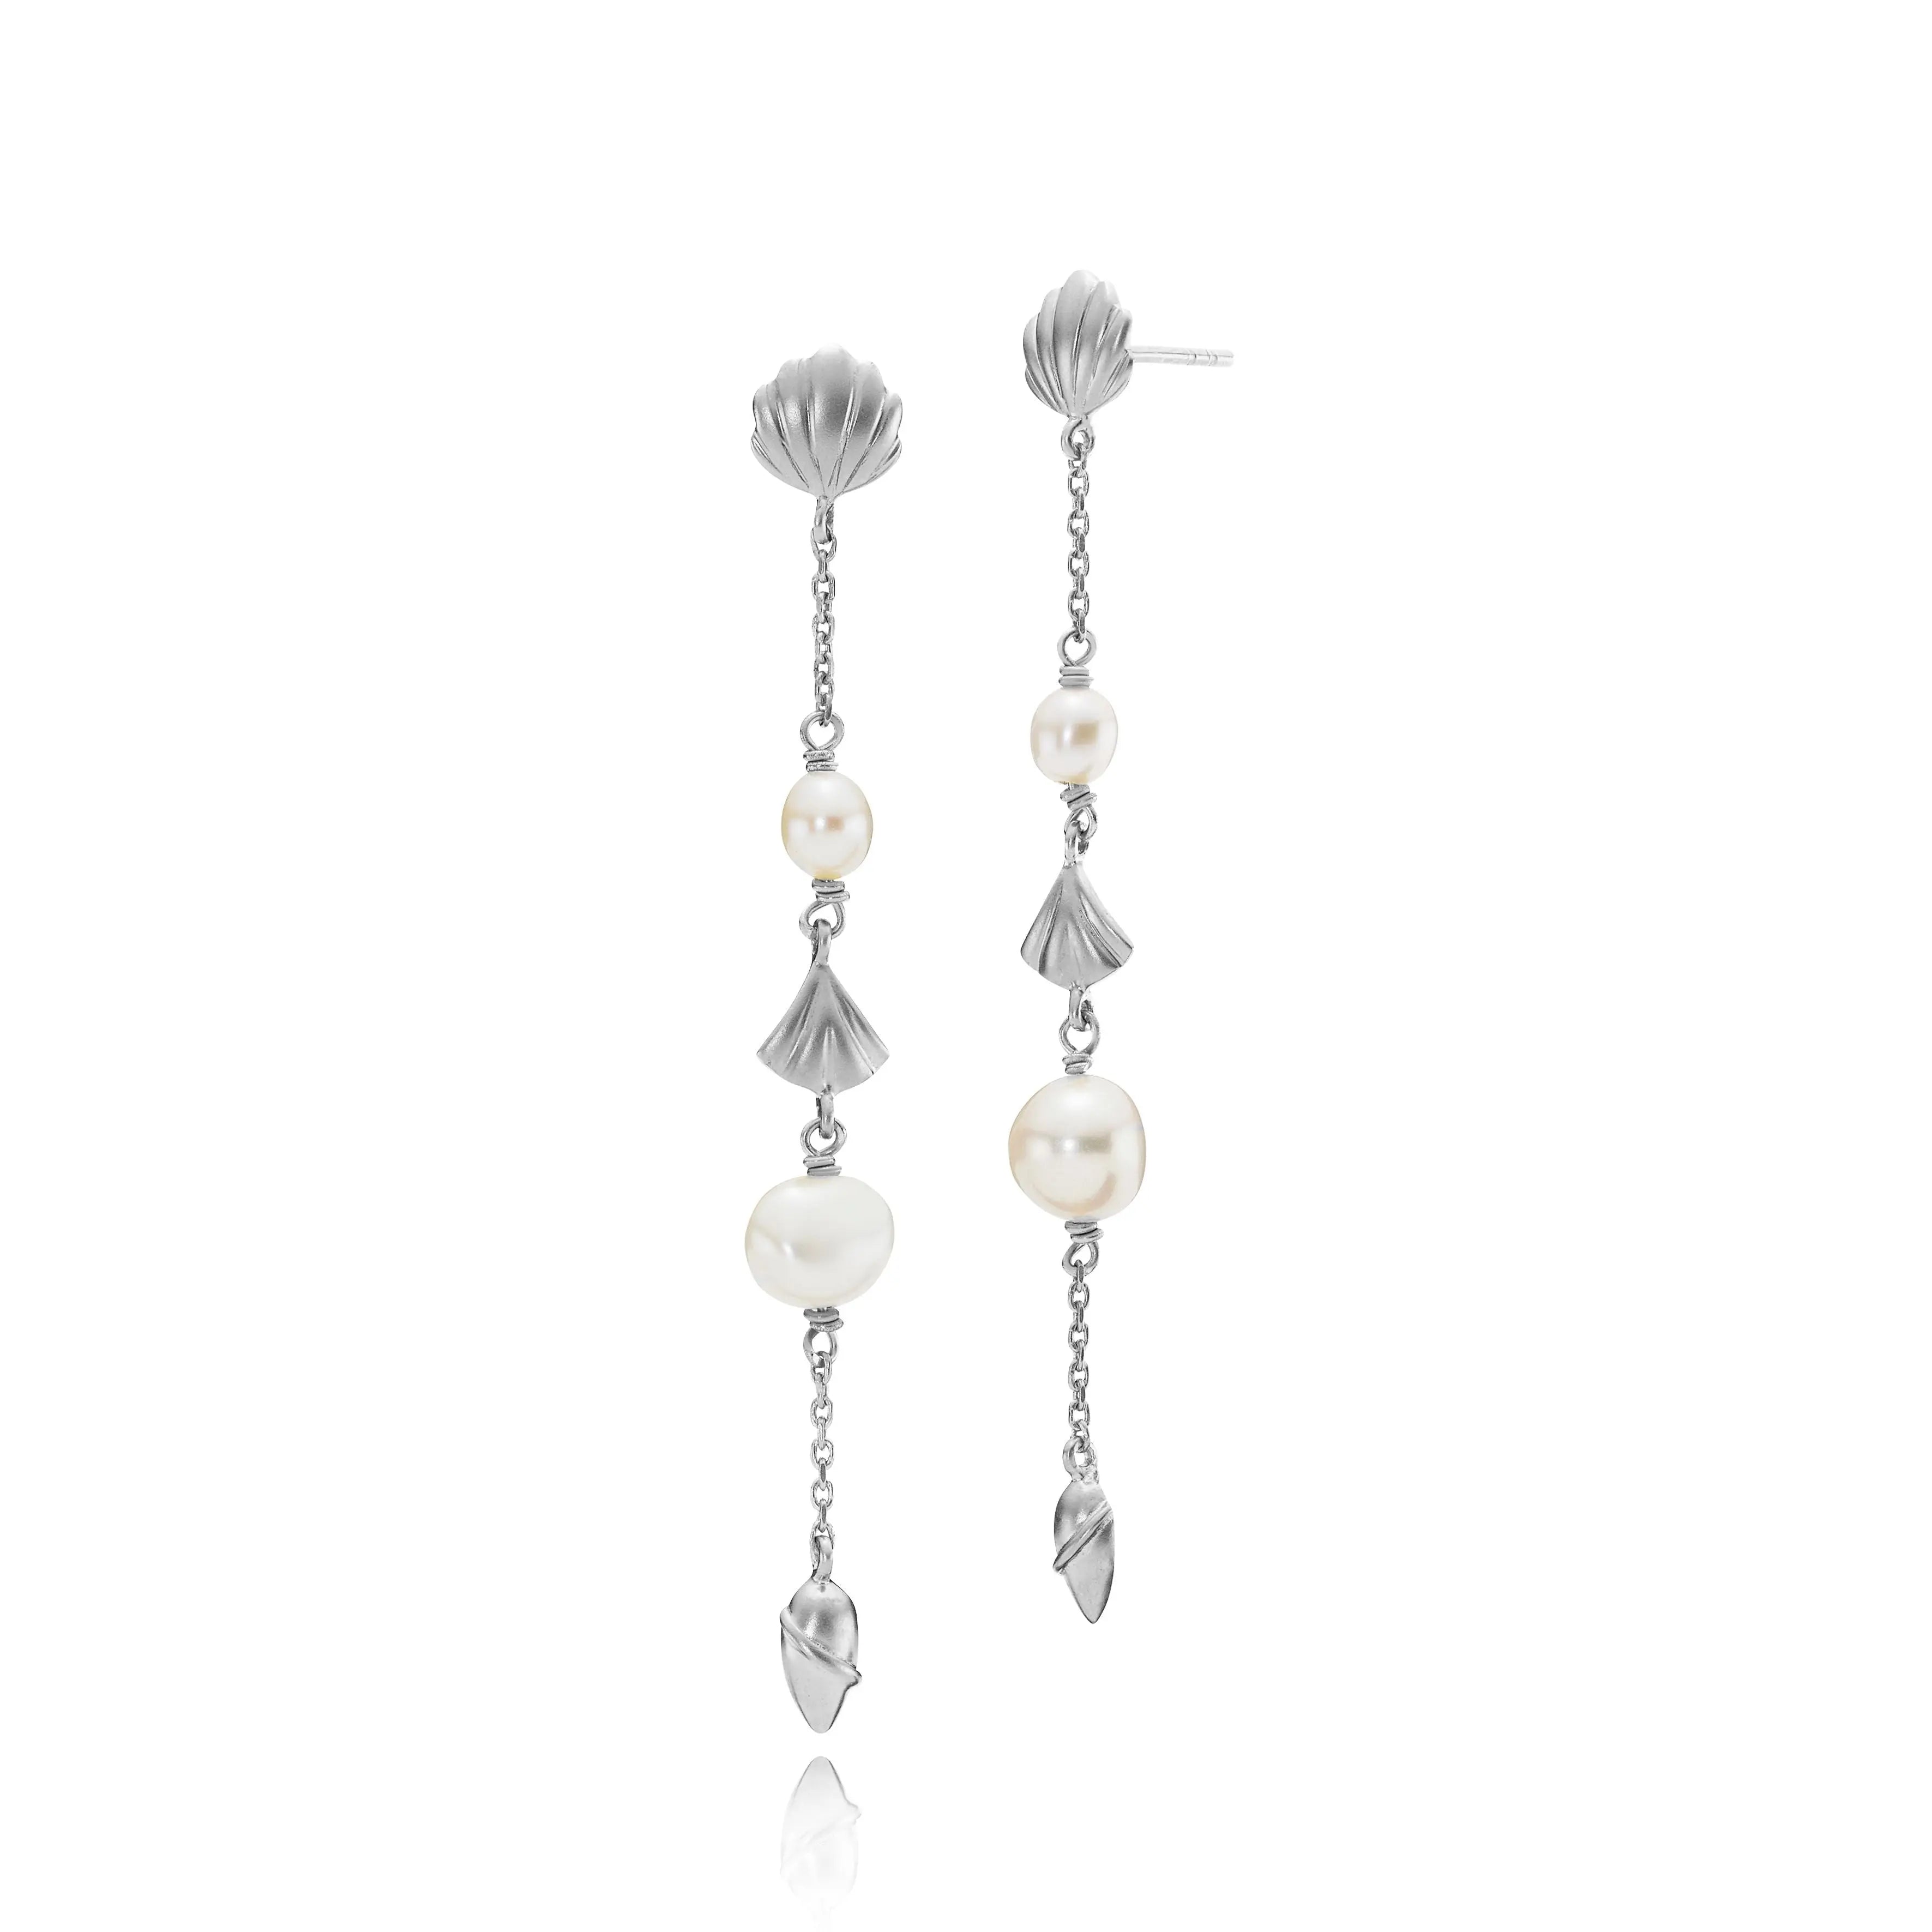 Isabella øreringe med ferskvandsperle - Mat sølv fra Izabel Camille